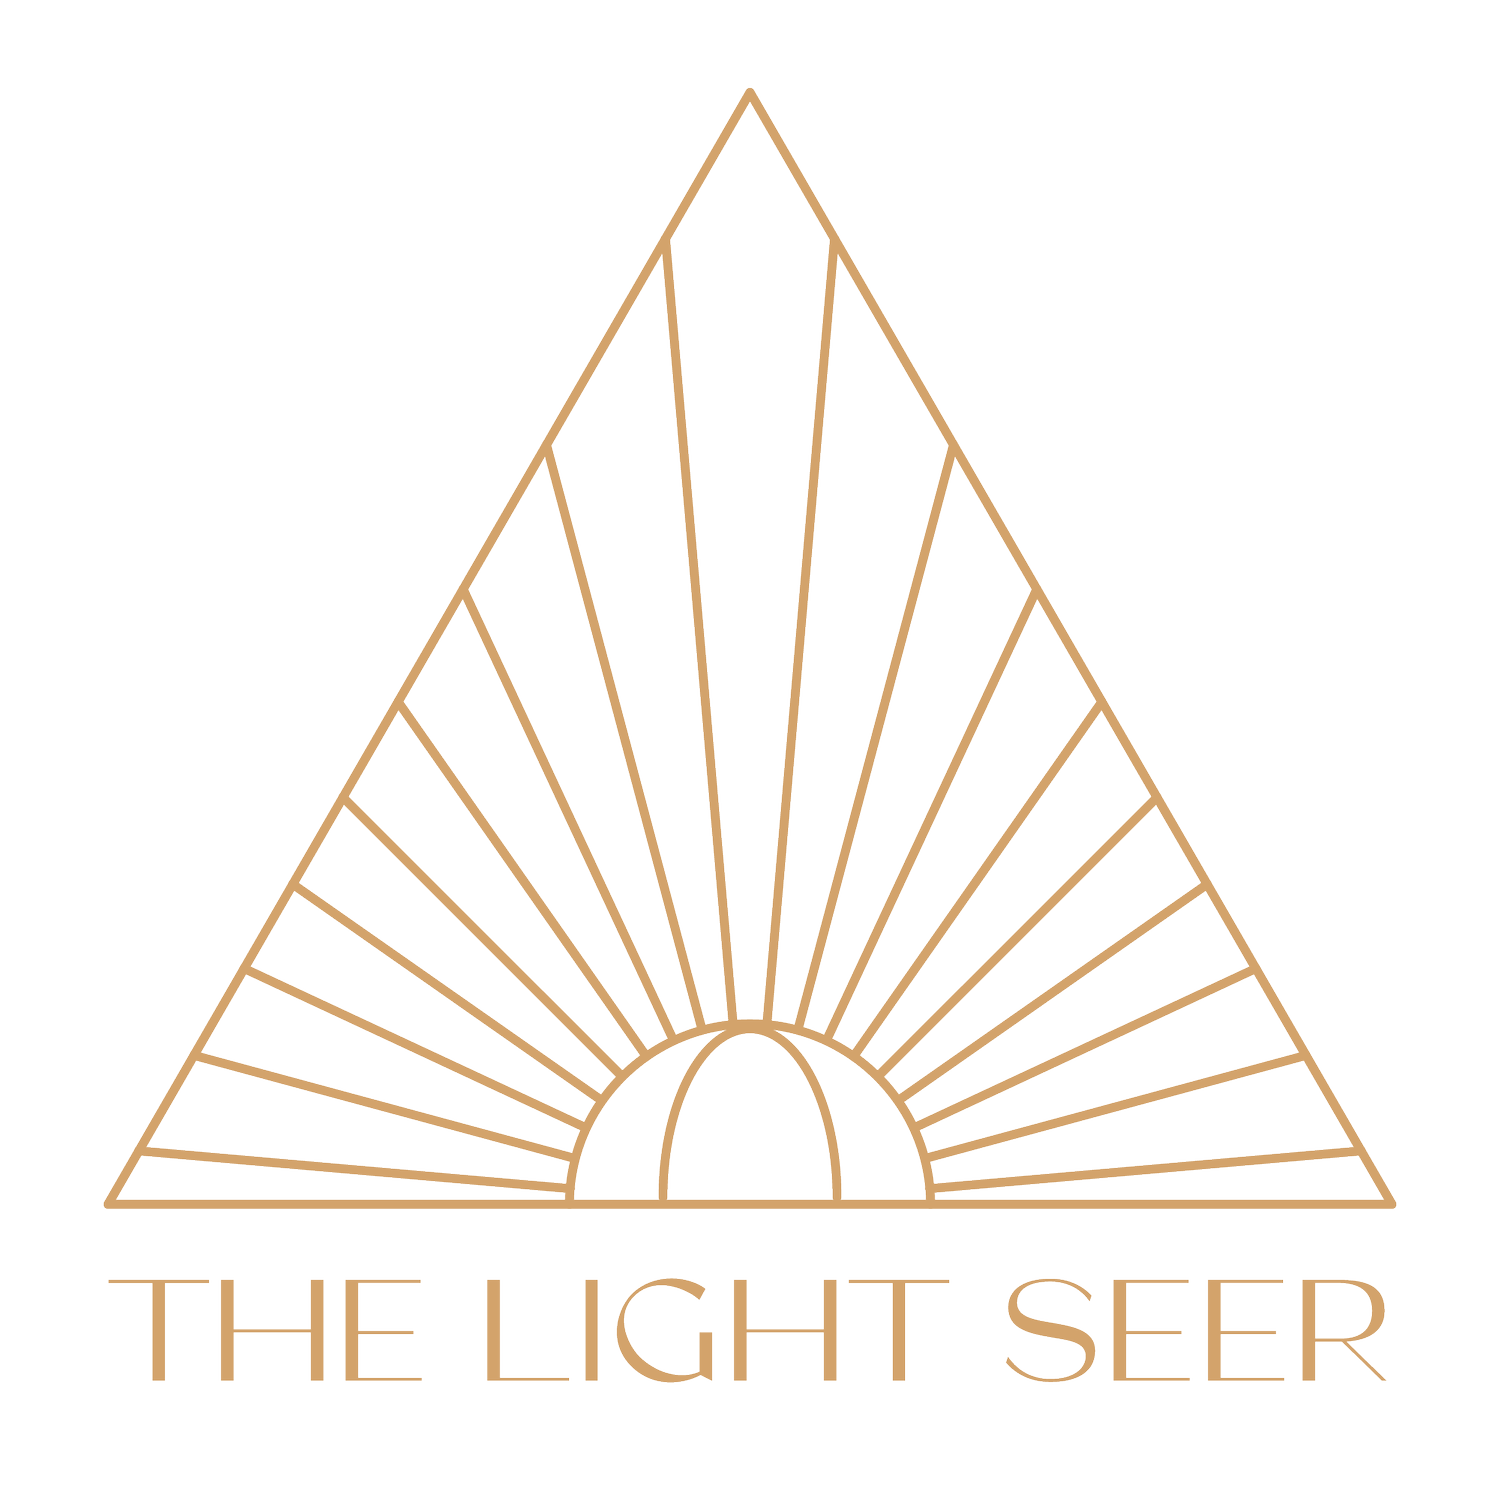 The Light Seer